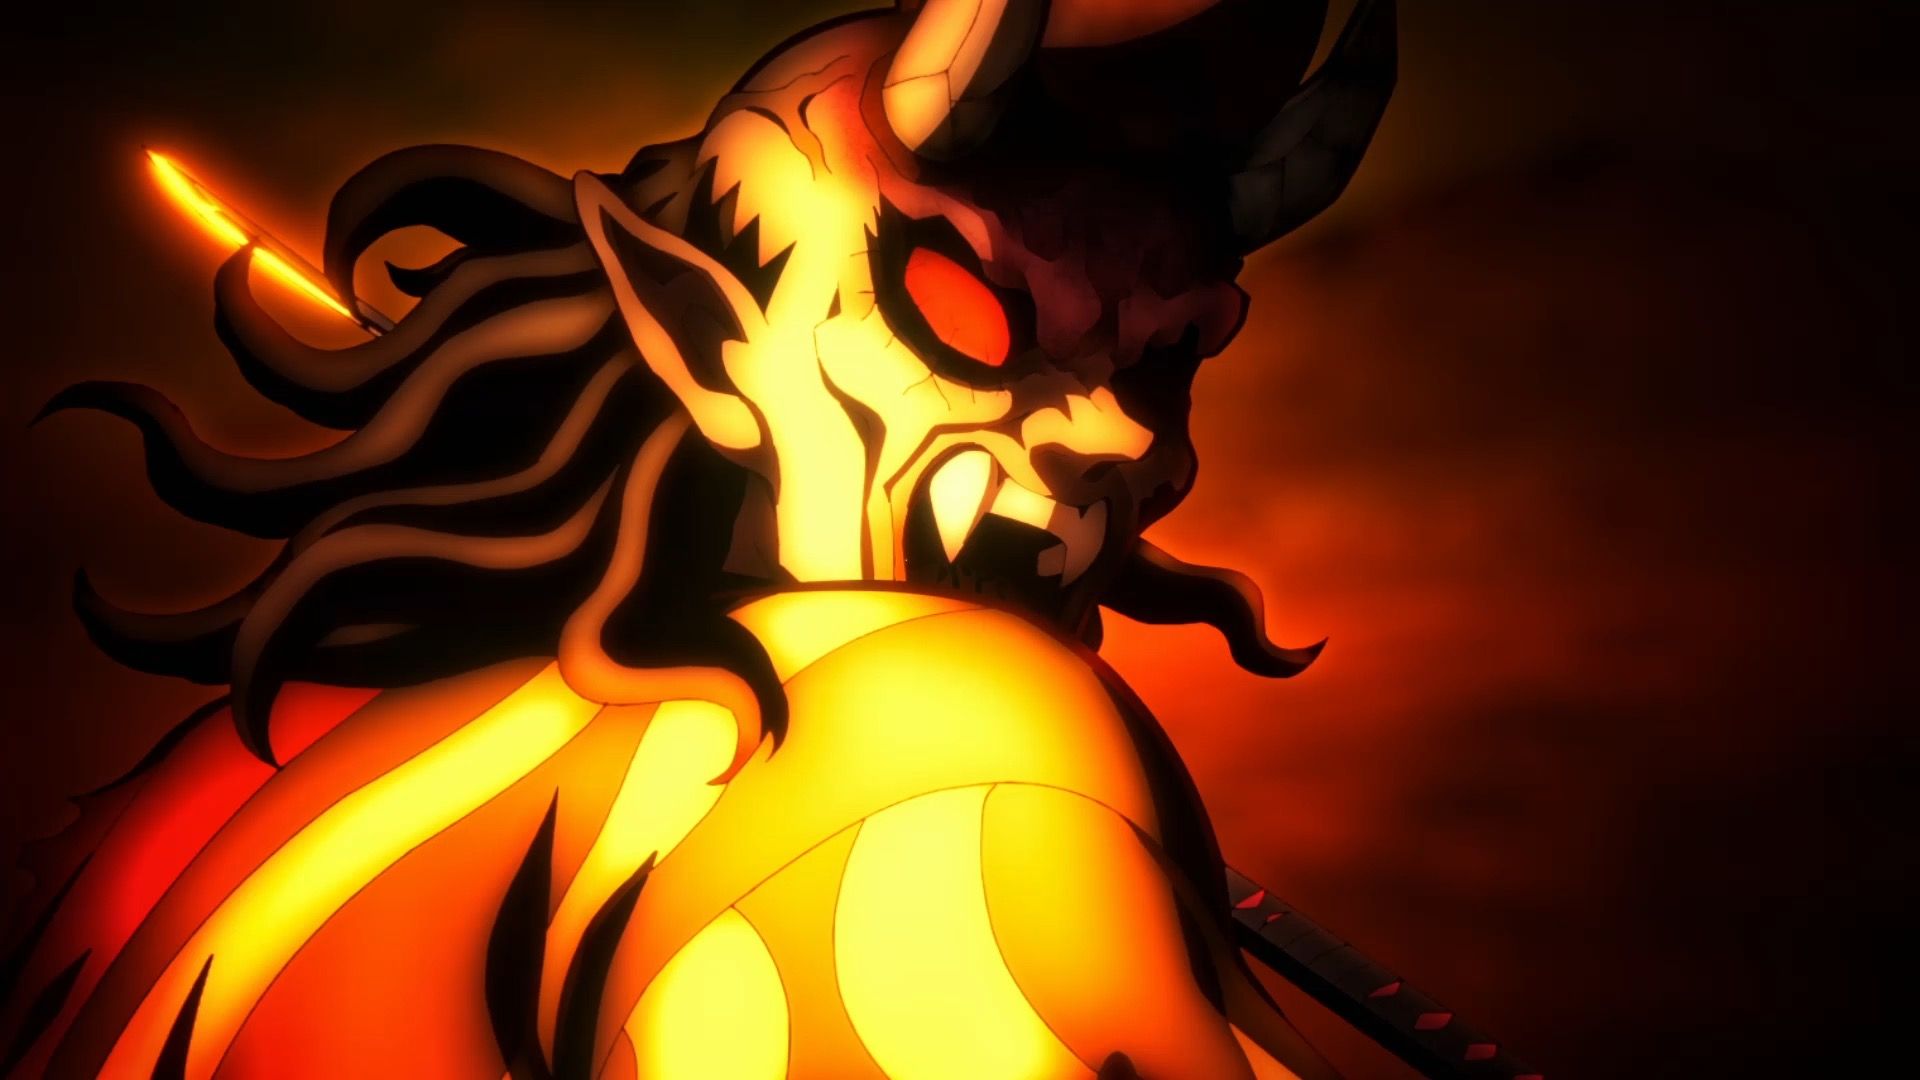 4-й сезон «Убийцы демонов» получил эксклюзивную дату выхода Crunchyroll и новый трейлер